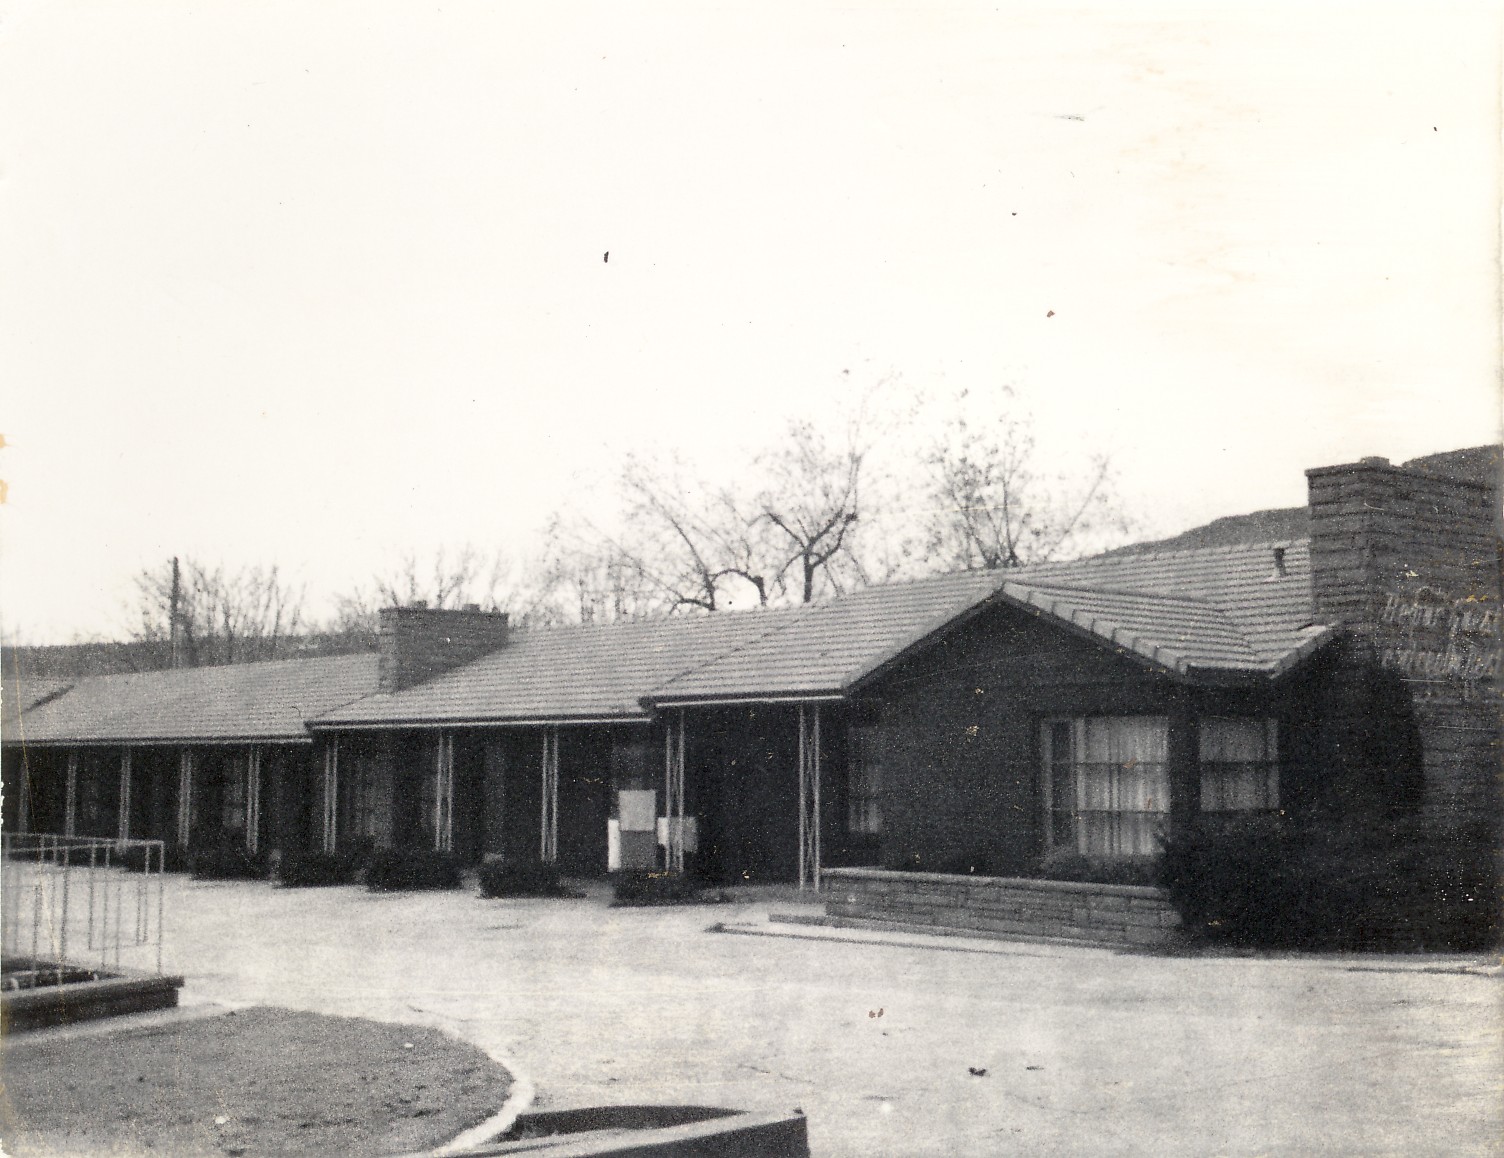 The Twin Oaks Motel in St George